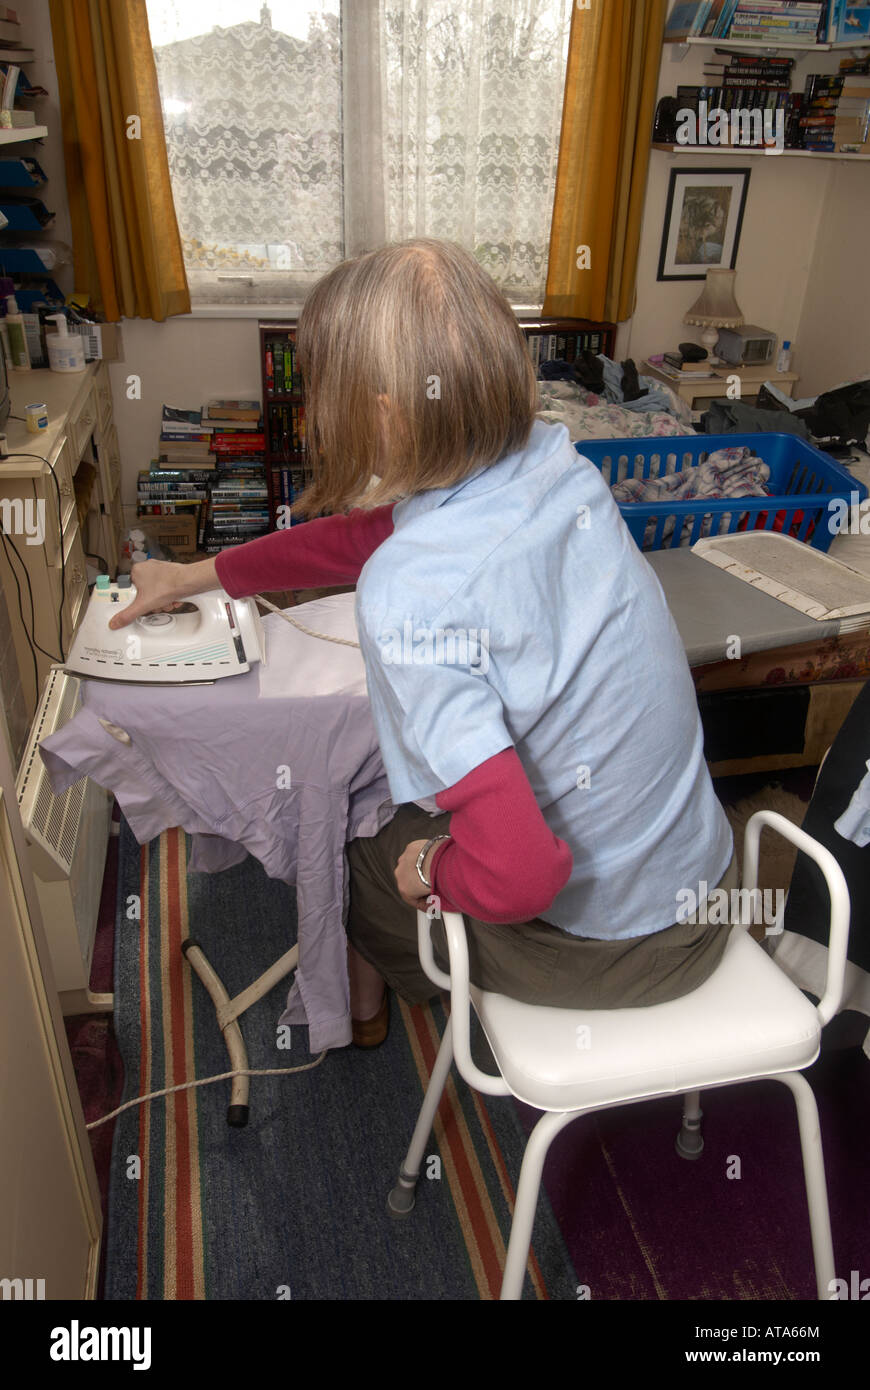 Dame auf ungültige Hocker Bügeln im Schlafzimmer, ihr Haarausdünnung aufgrund von Chemotherapie zu tun Stockfoto